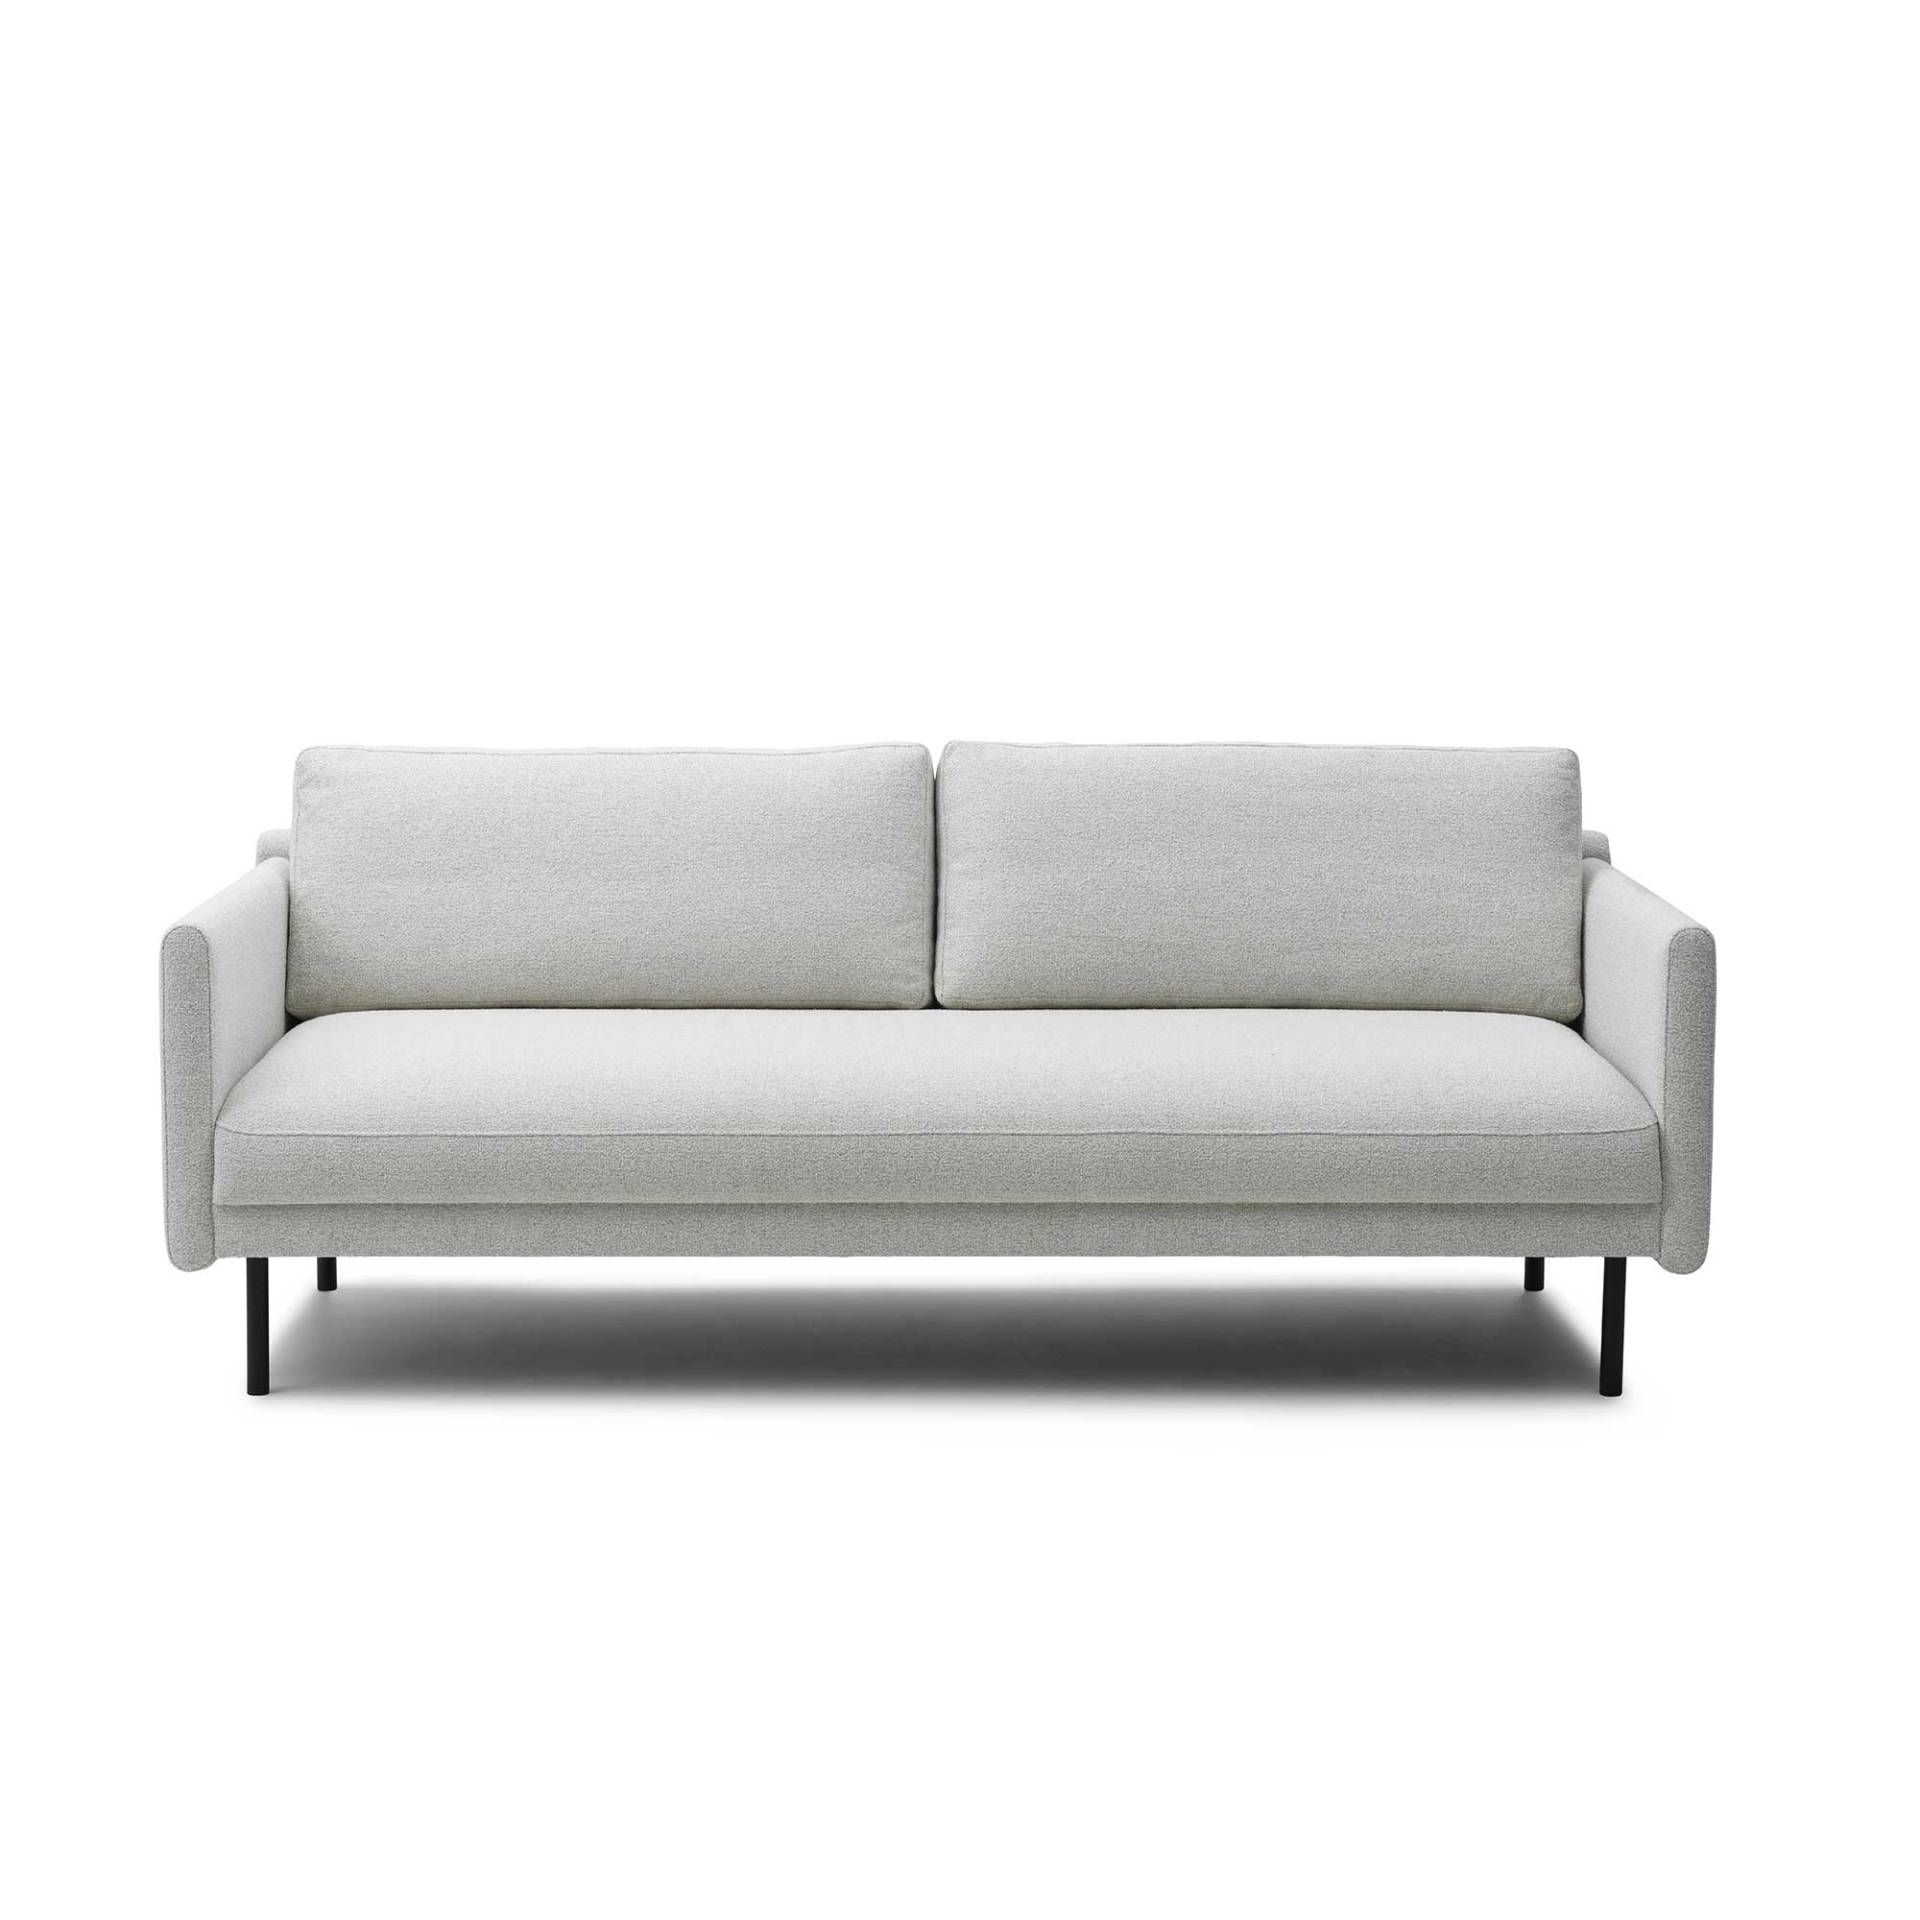 Normann Copenhagen - Rar 3-Sitzer Sofa - off-white/Venezia (62% Polyester, 17% Baumwolle, 14% Viskose, 7% Leinen)/Gestell Stahl schwarz... von Normann Copenhagen